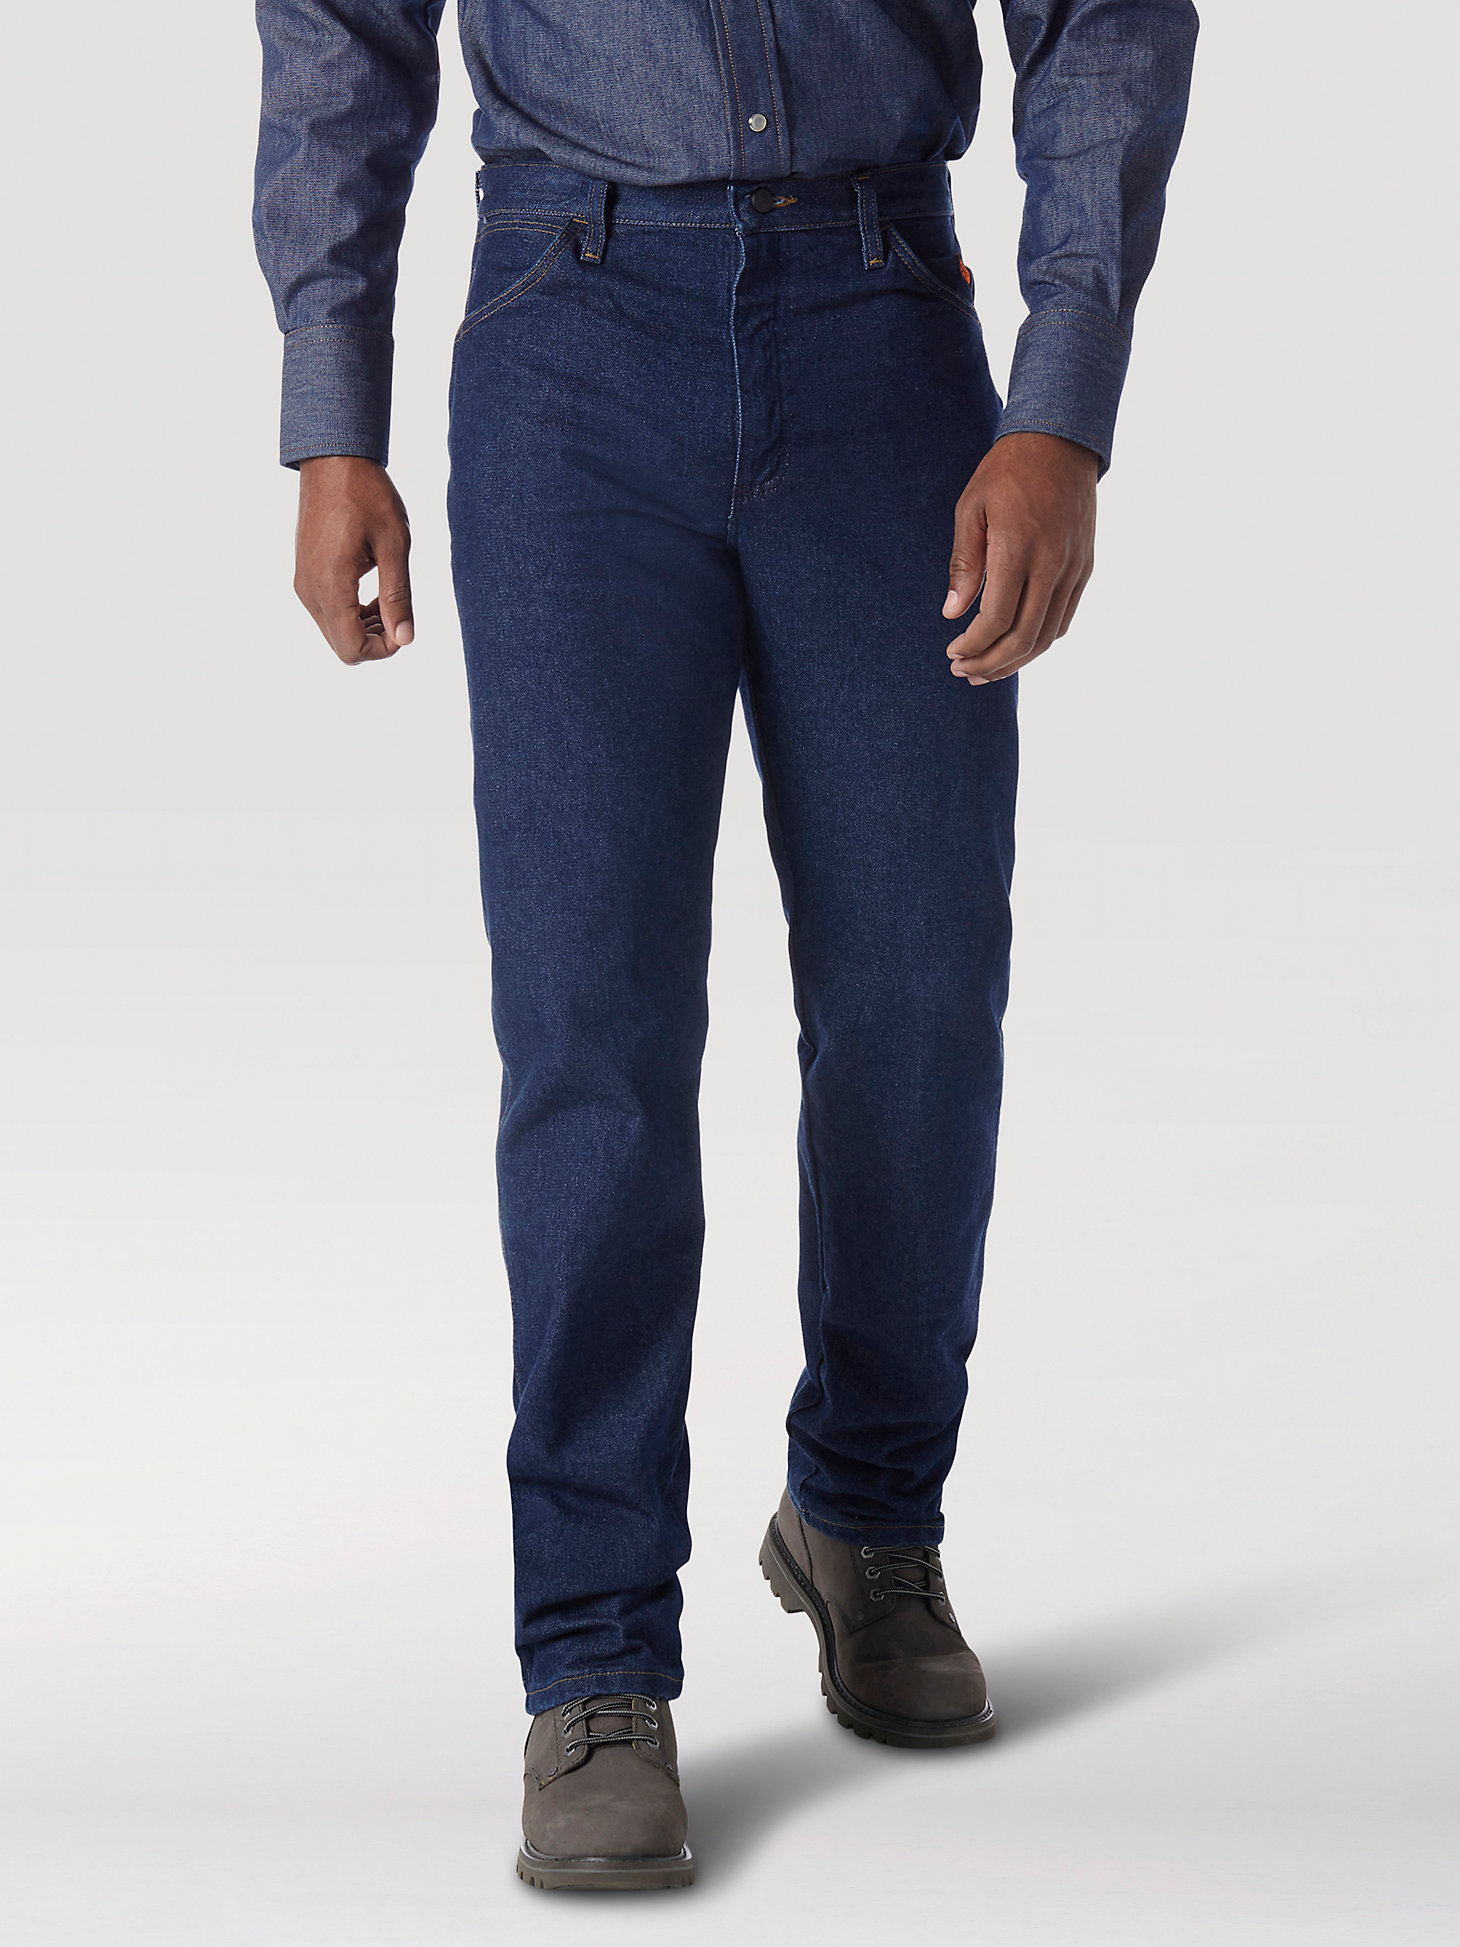 discount 77% KIDS FASHION Trousers Jean Kiabi jeans Blue 1-3M 